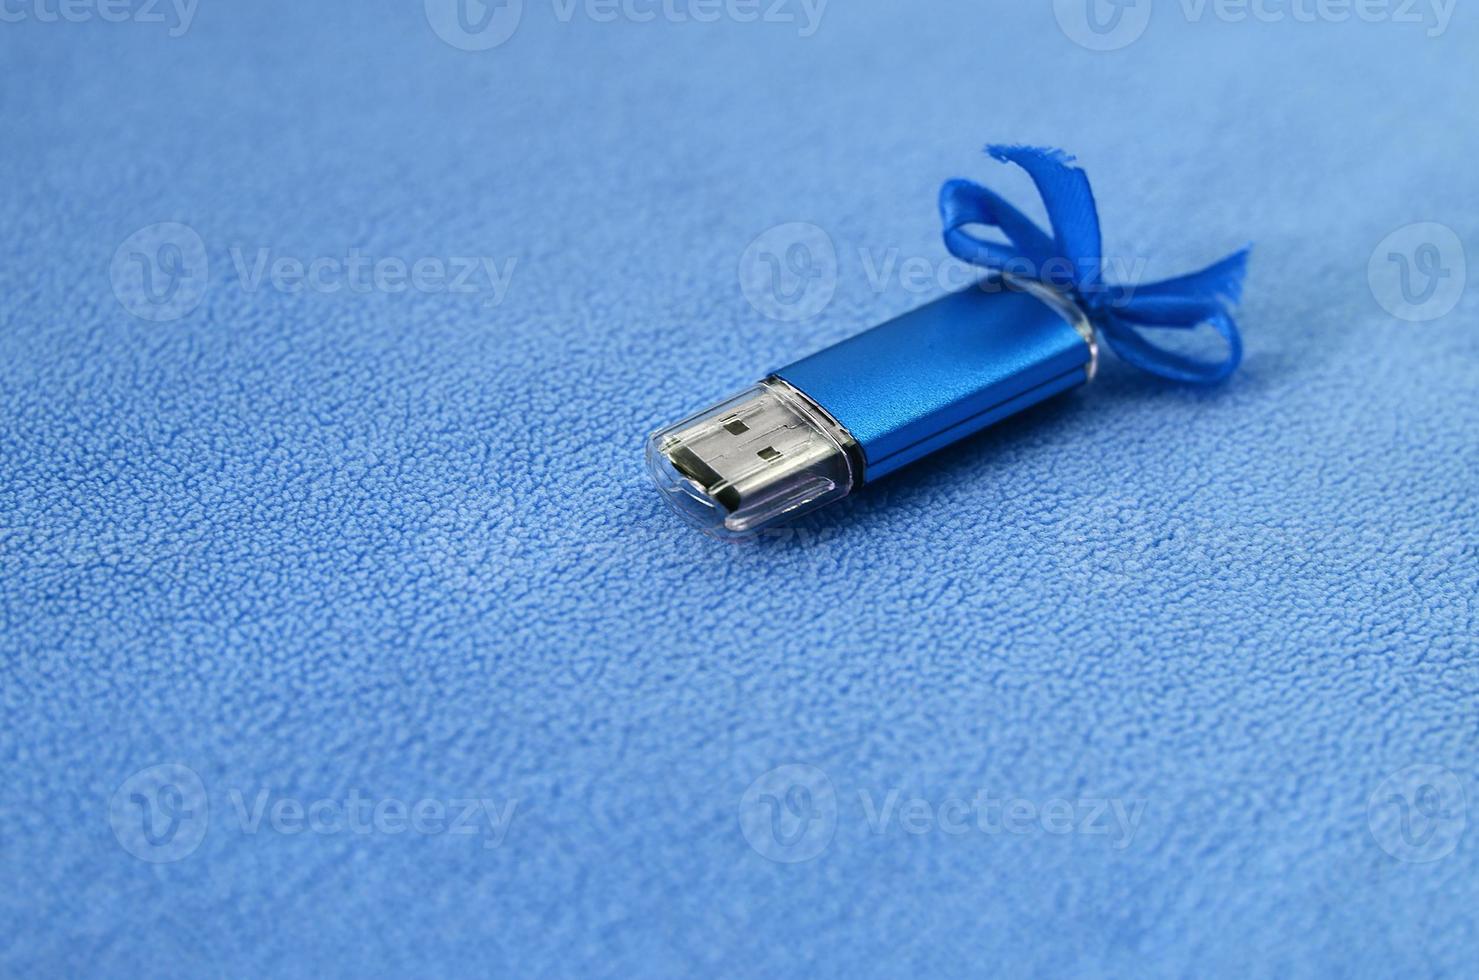 carte mémoire flash usb bleu brillant avec un arc bleu se trouve sur une couverture de tissu polaire bleu clair doux et poilu. conception de cadeau féminin classique pour une carte mémoire photo